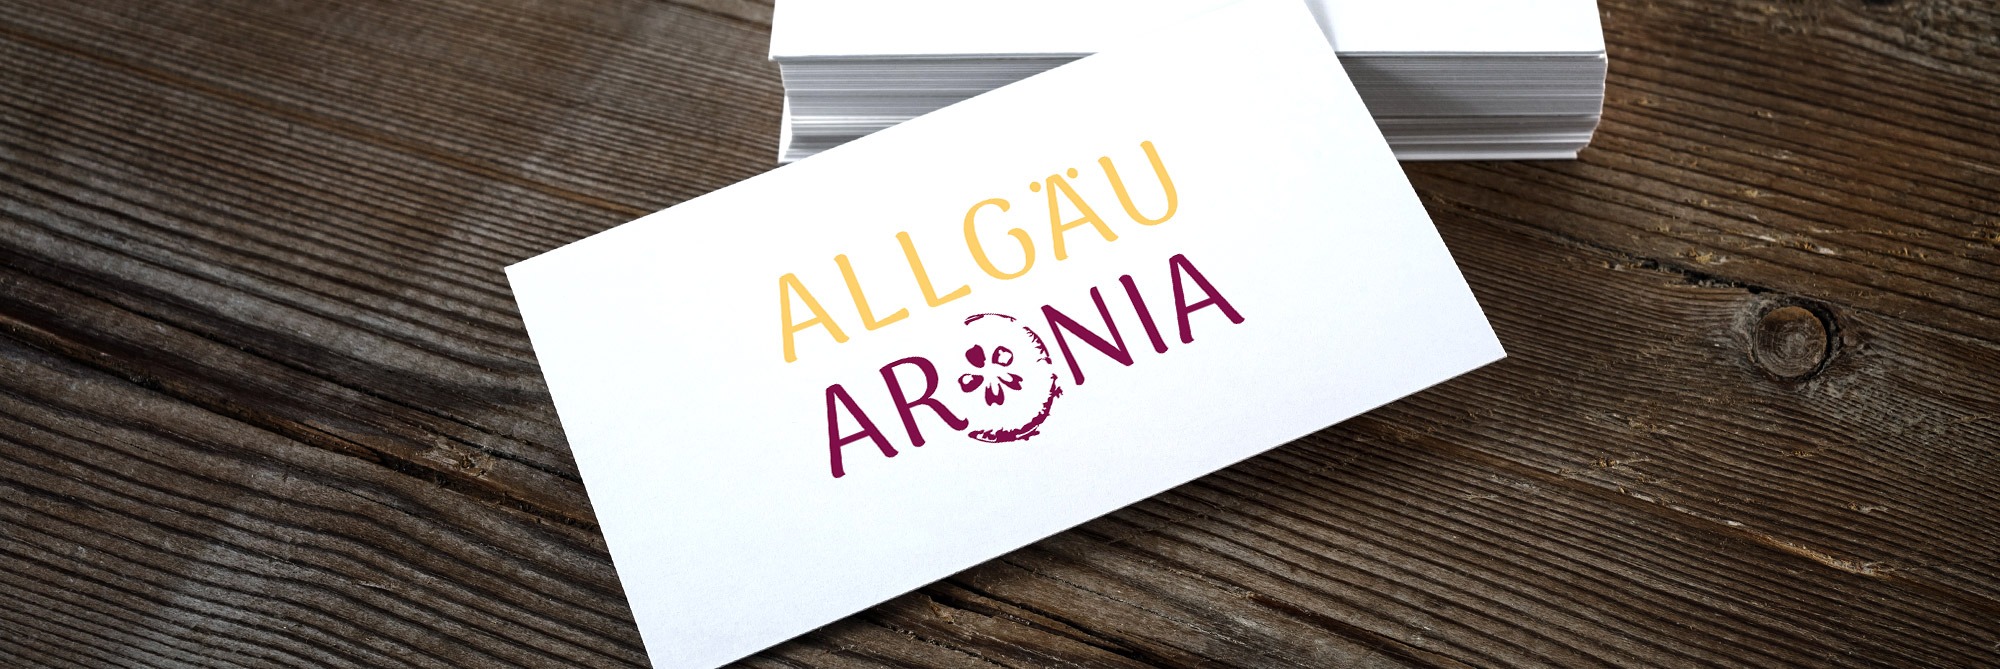 Referenz_Logoentwicklung_Allgaeu_Aronia